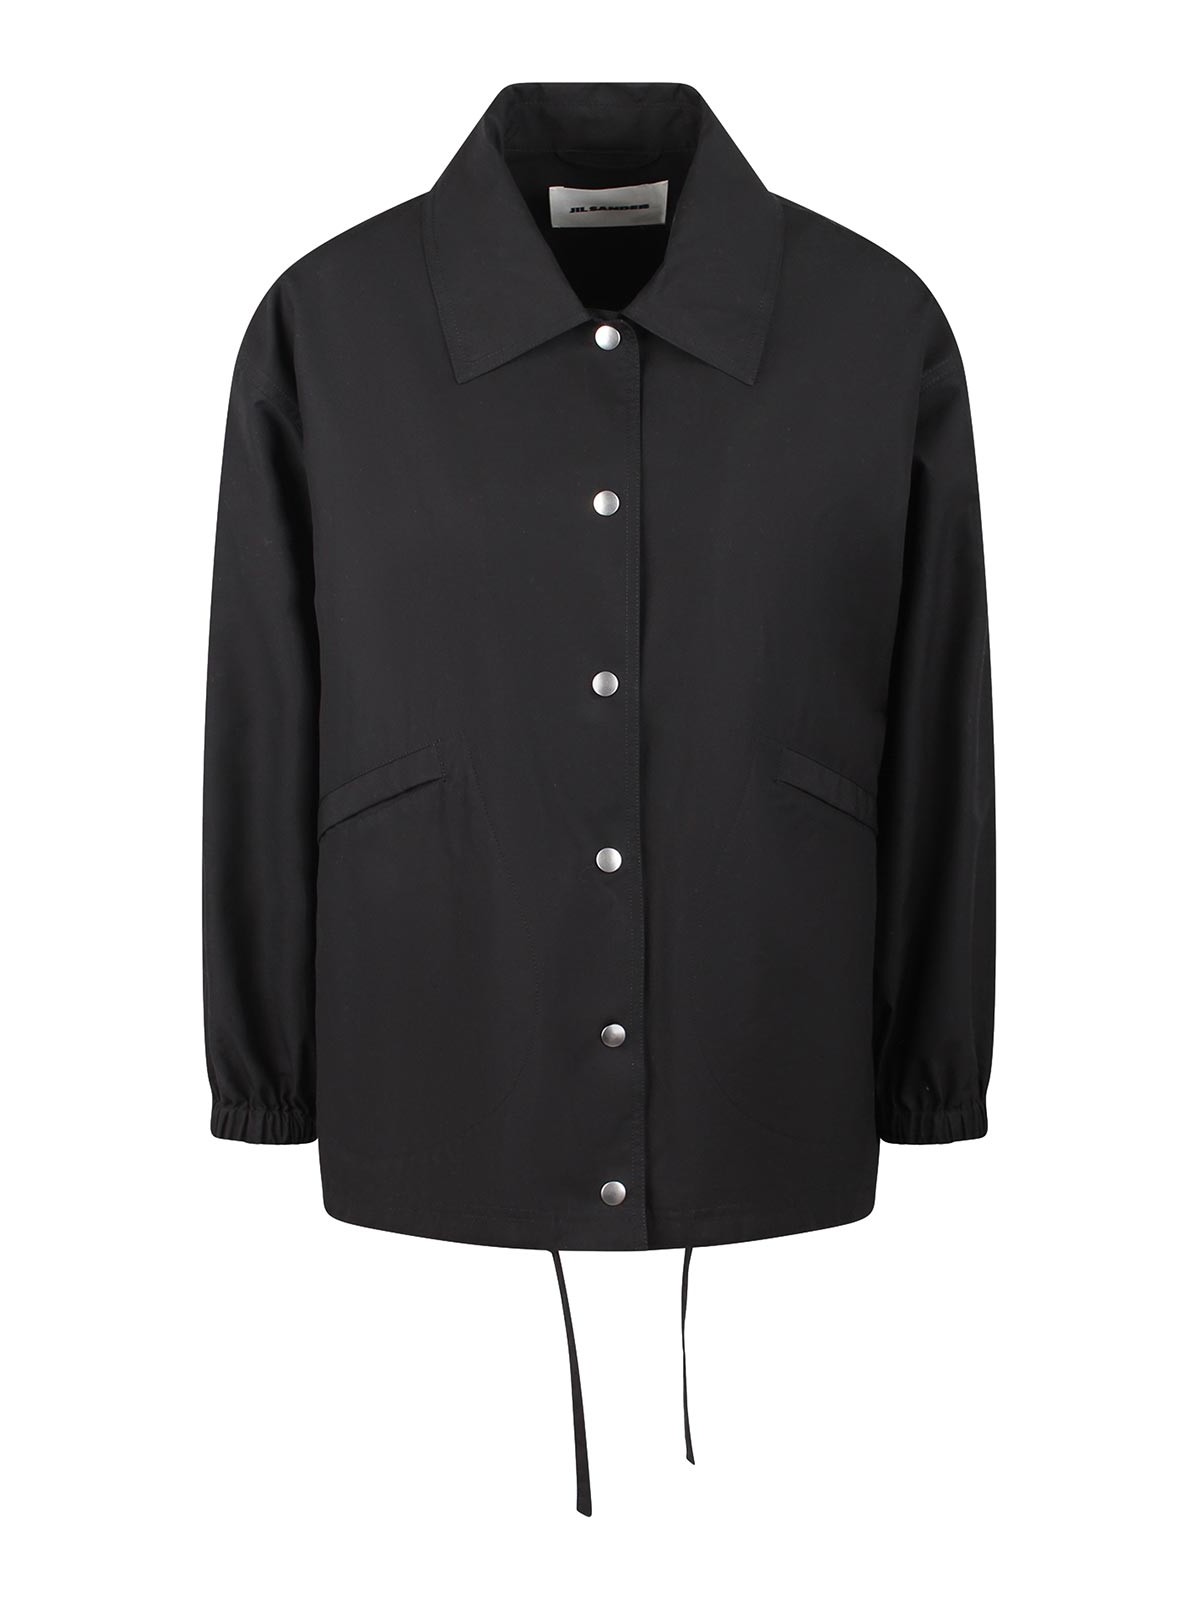 Shop Jil Sander Printed Jacket In Black